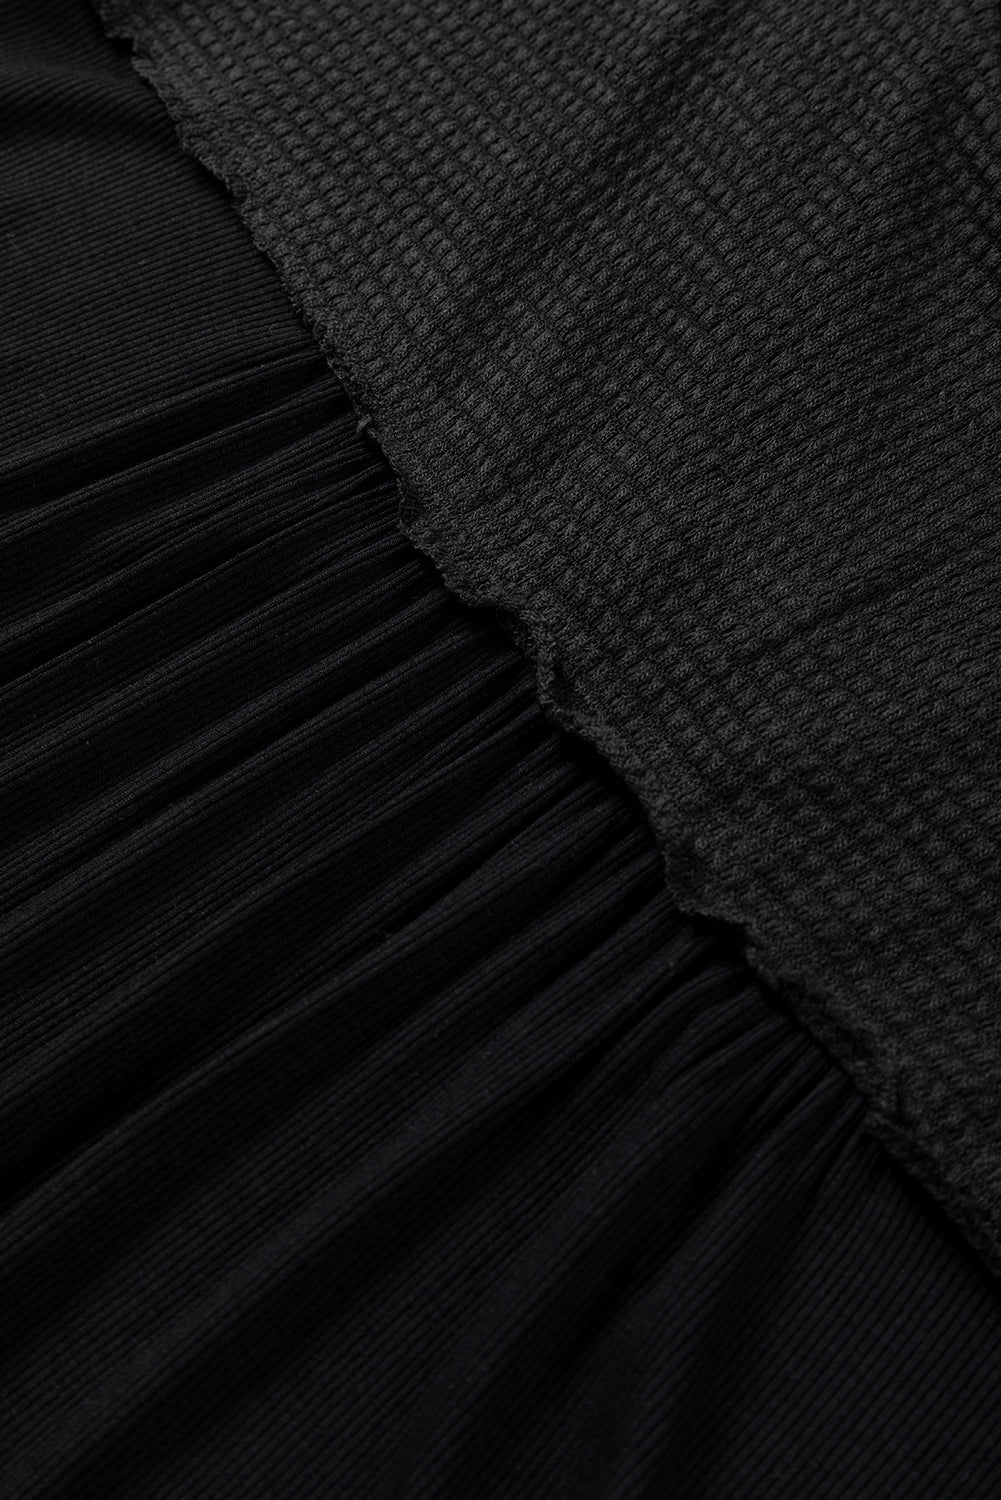 Camicetta borchiata con scollo a V e cuciture in maglia nera a contrasto